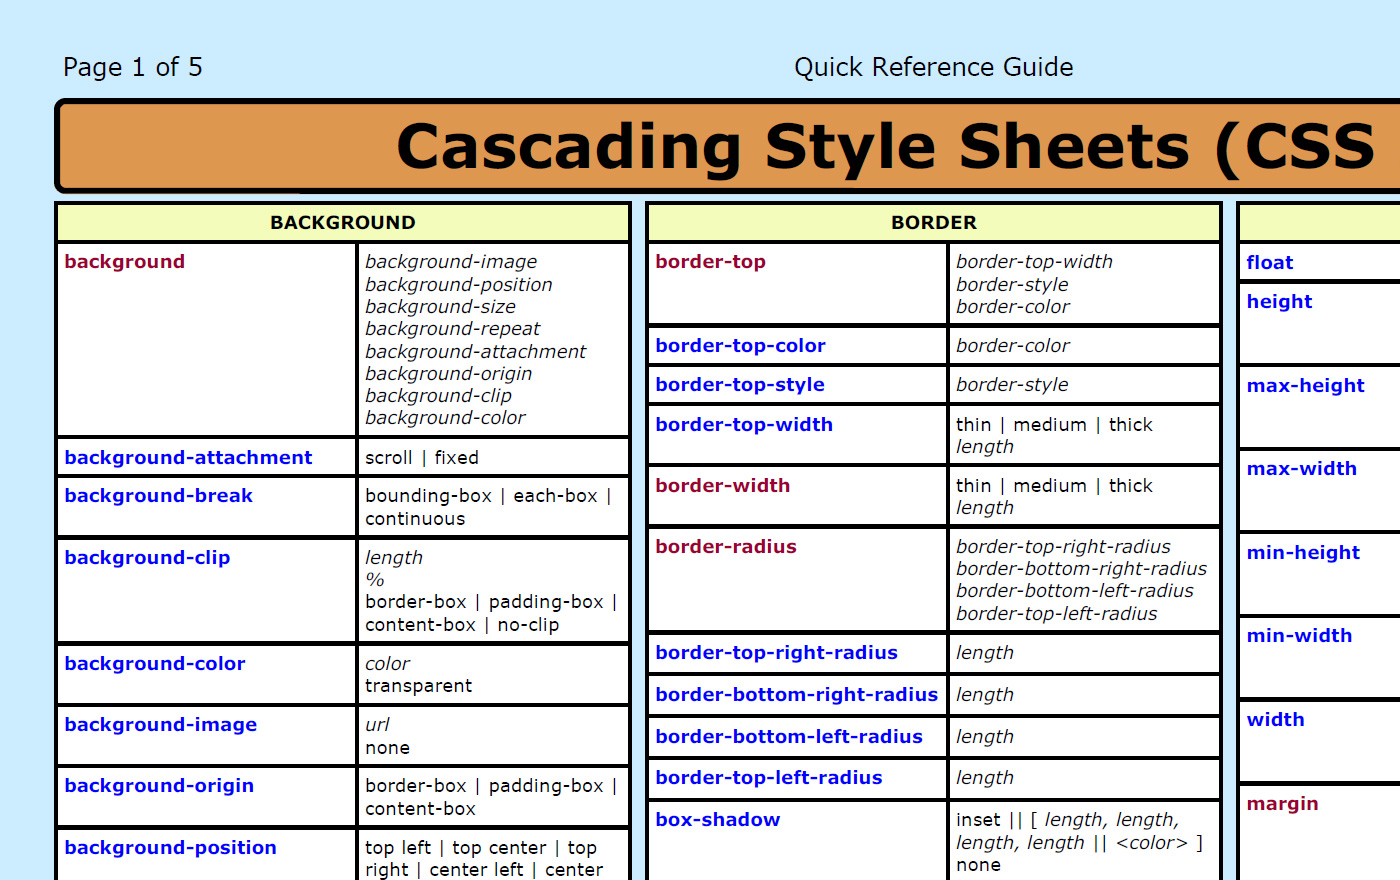 CSS3 Cheat Sheet (PDF)